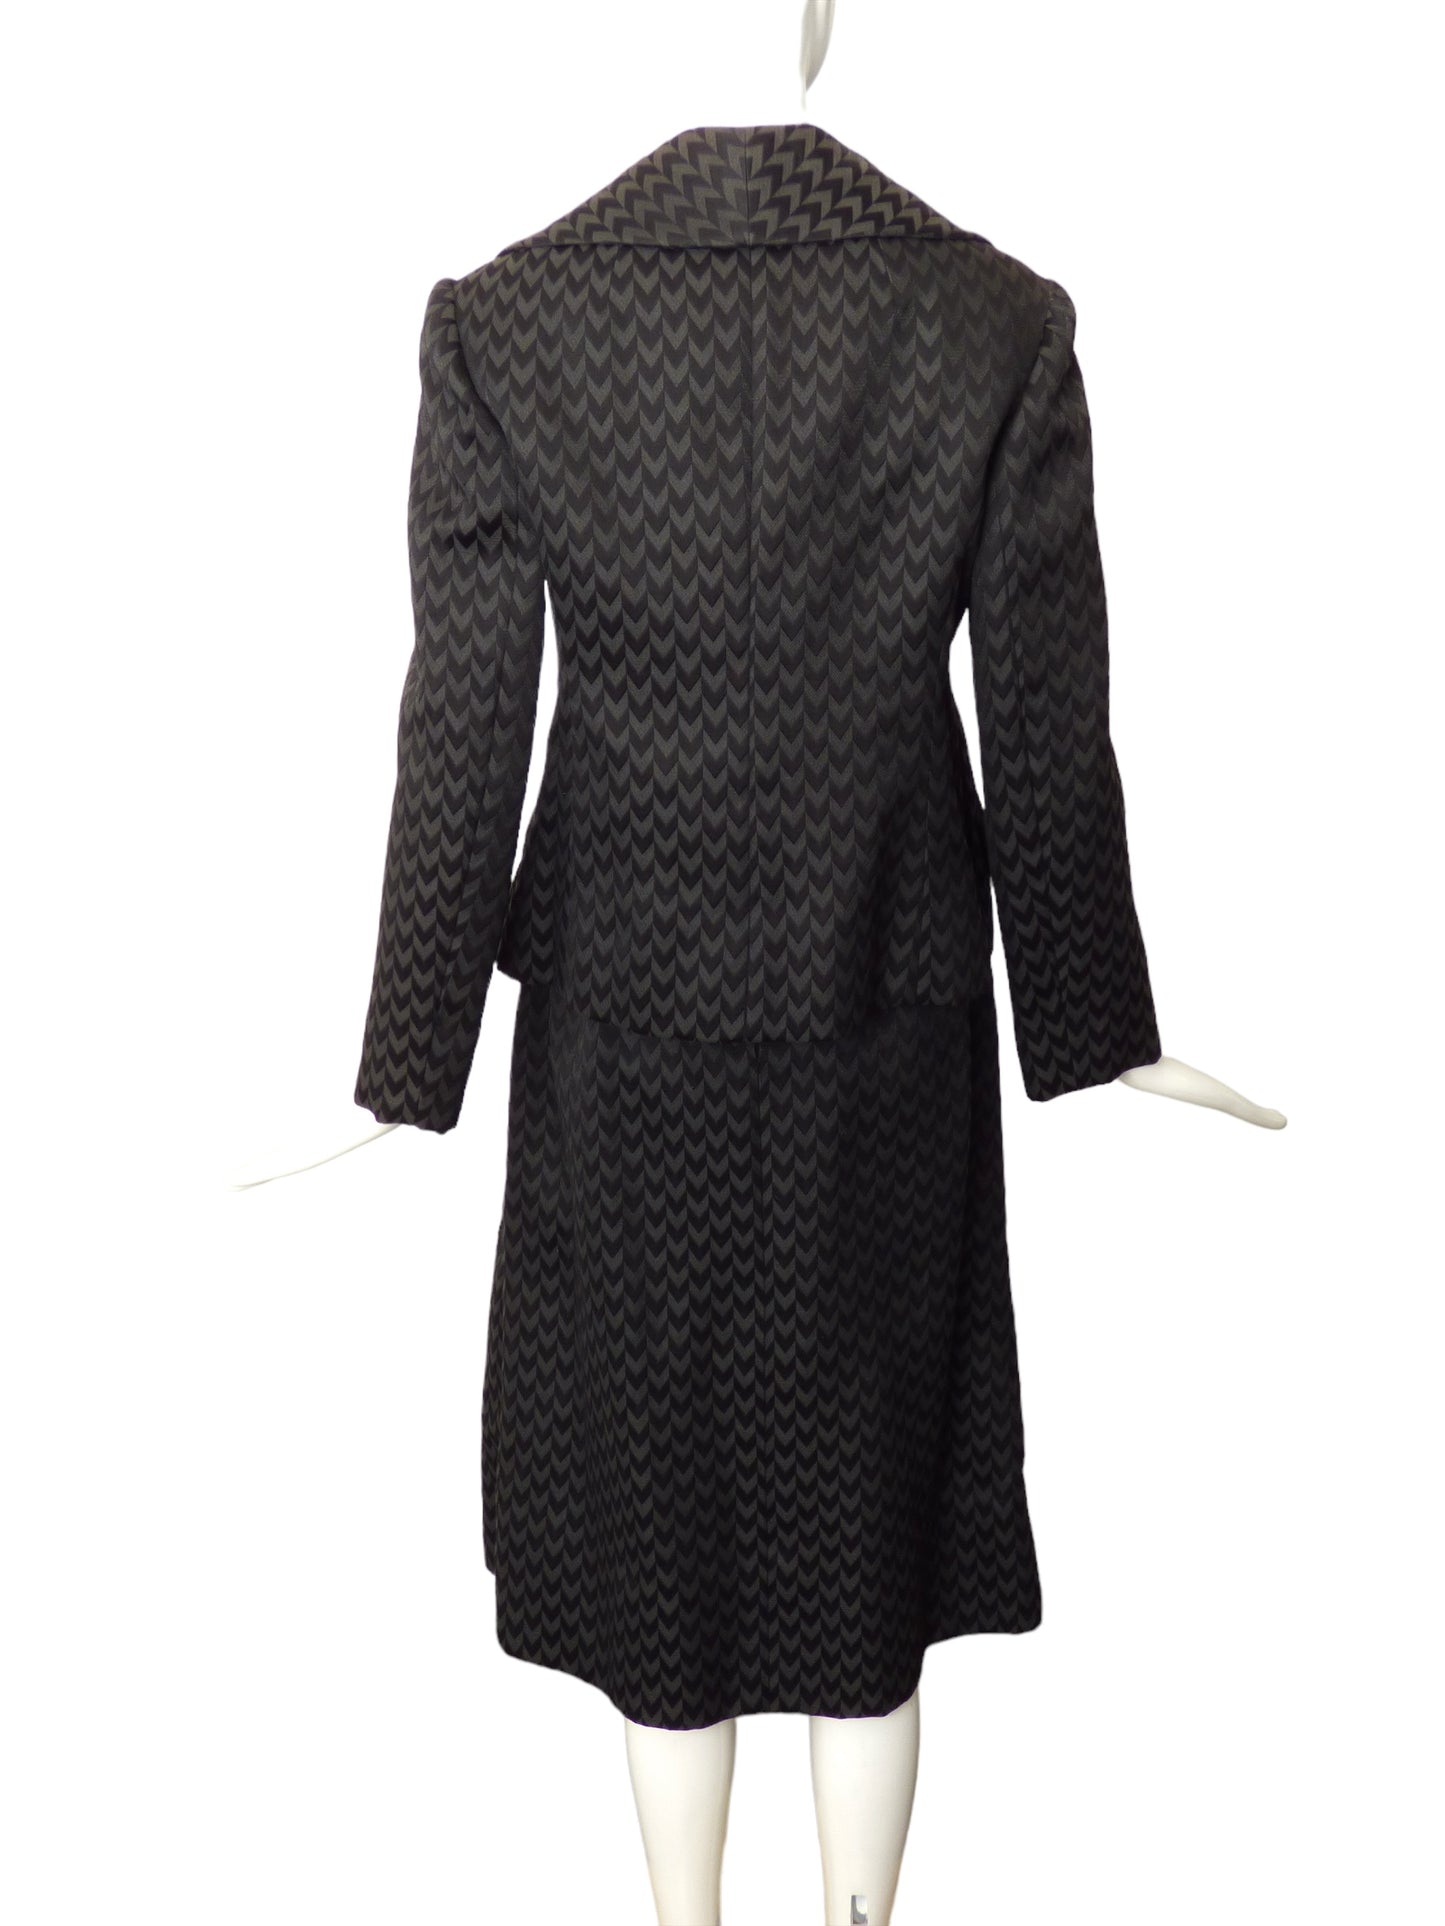 RONALD AMEY- 1960s Chevron Skirt Suit, Size-8